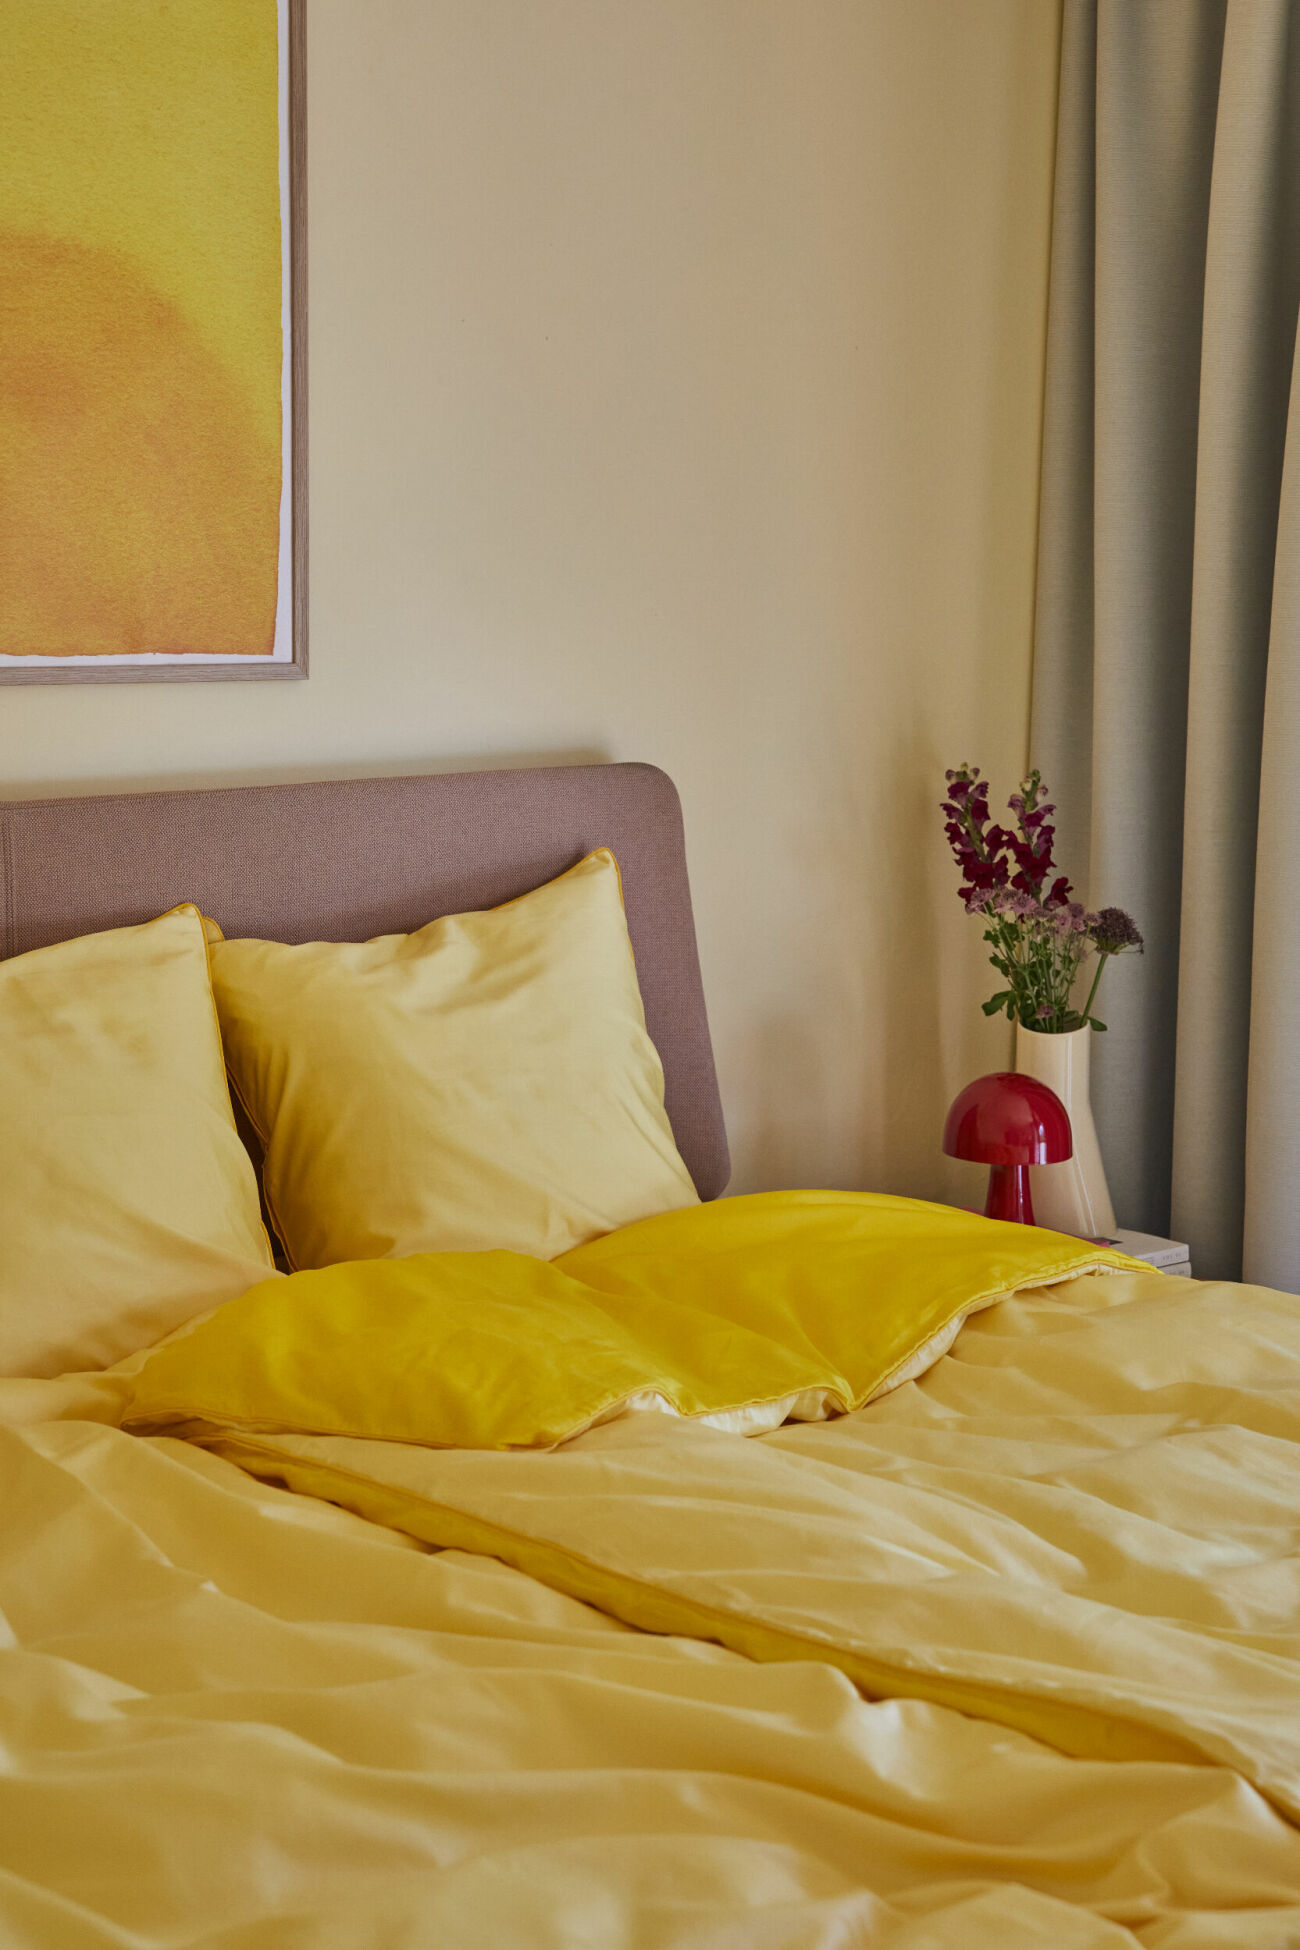 sovrum med gula sängkläder